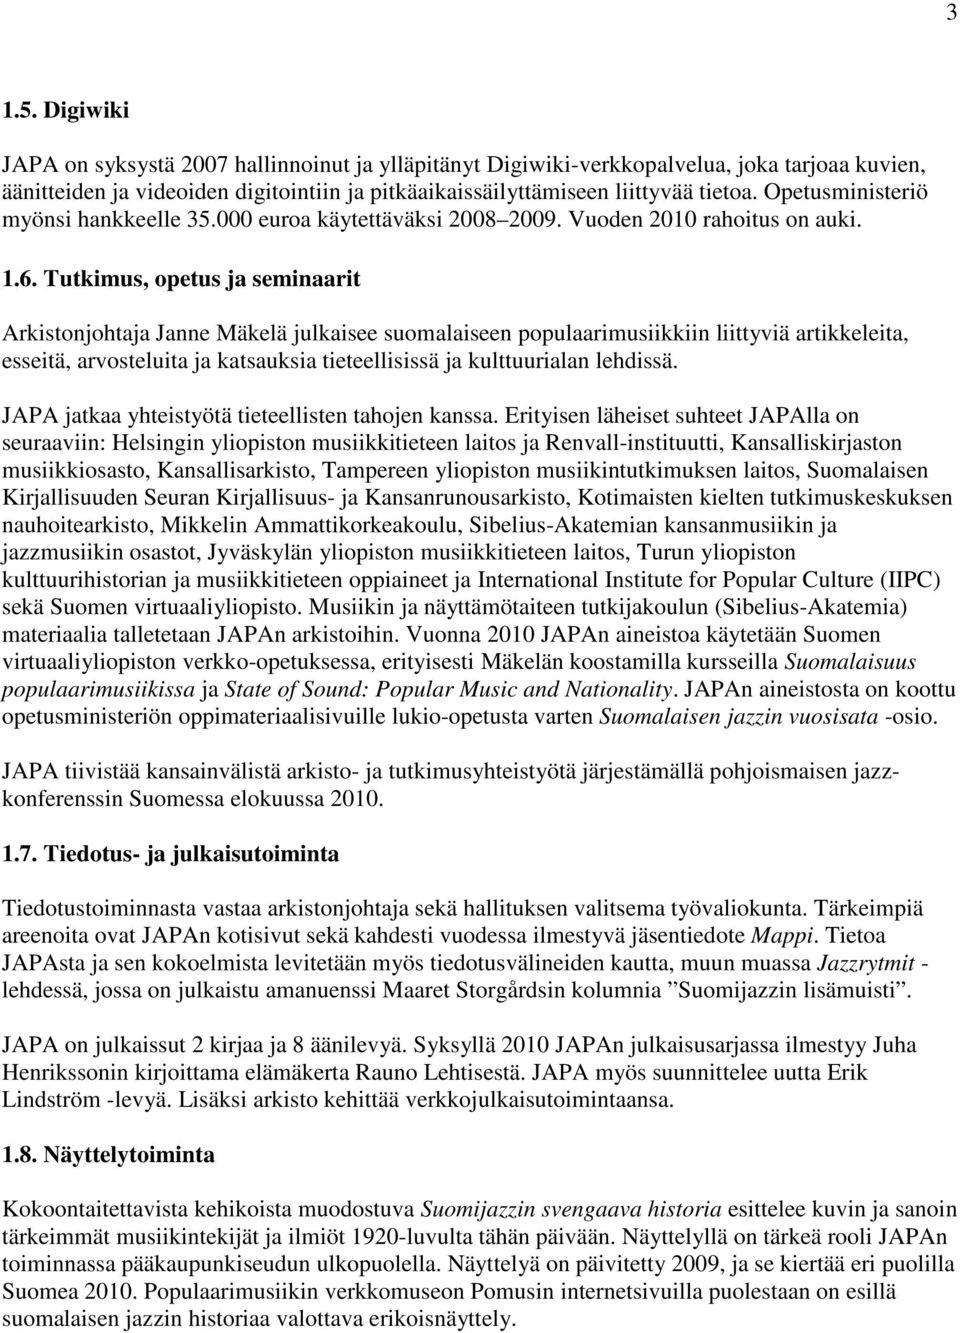 Tutkimus, opetus ja seminaarit Arkistonjohtaja Janne Mäkelä julkaisee suomalaiseen populaarimusiikkiin liittyviä artikkeleita, esseitä, arvosteluita ja katsauksia tieteellisissä ja kulttuurialan